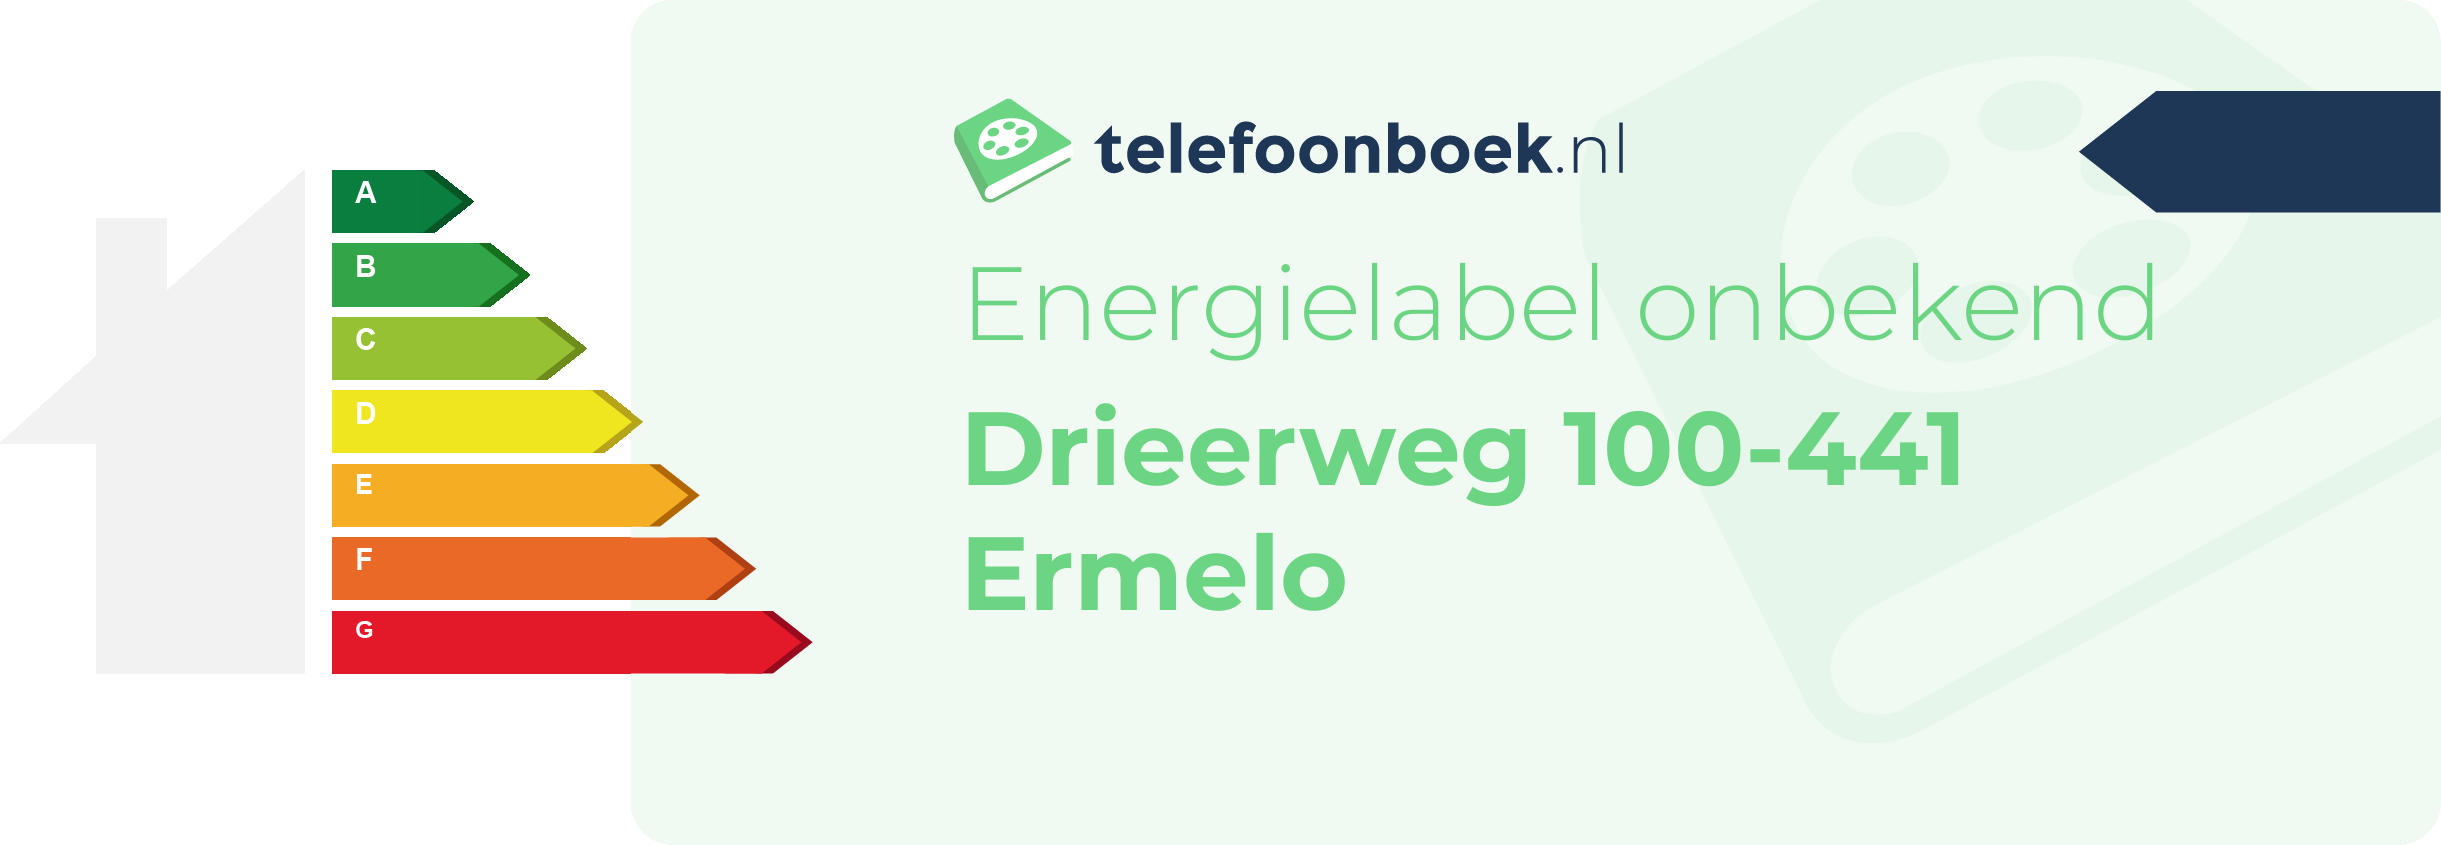 Energielabel Drieerweg 100-441 Ermelo